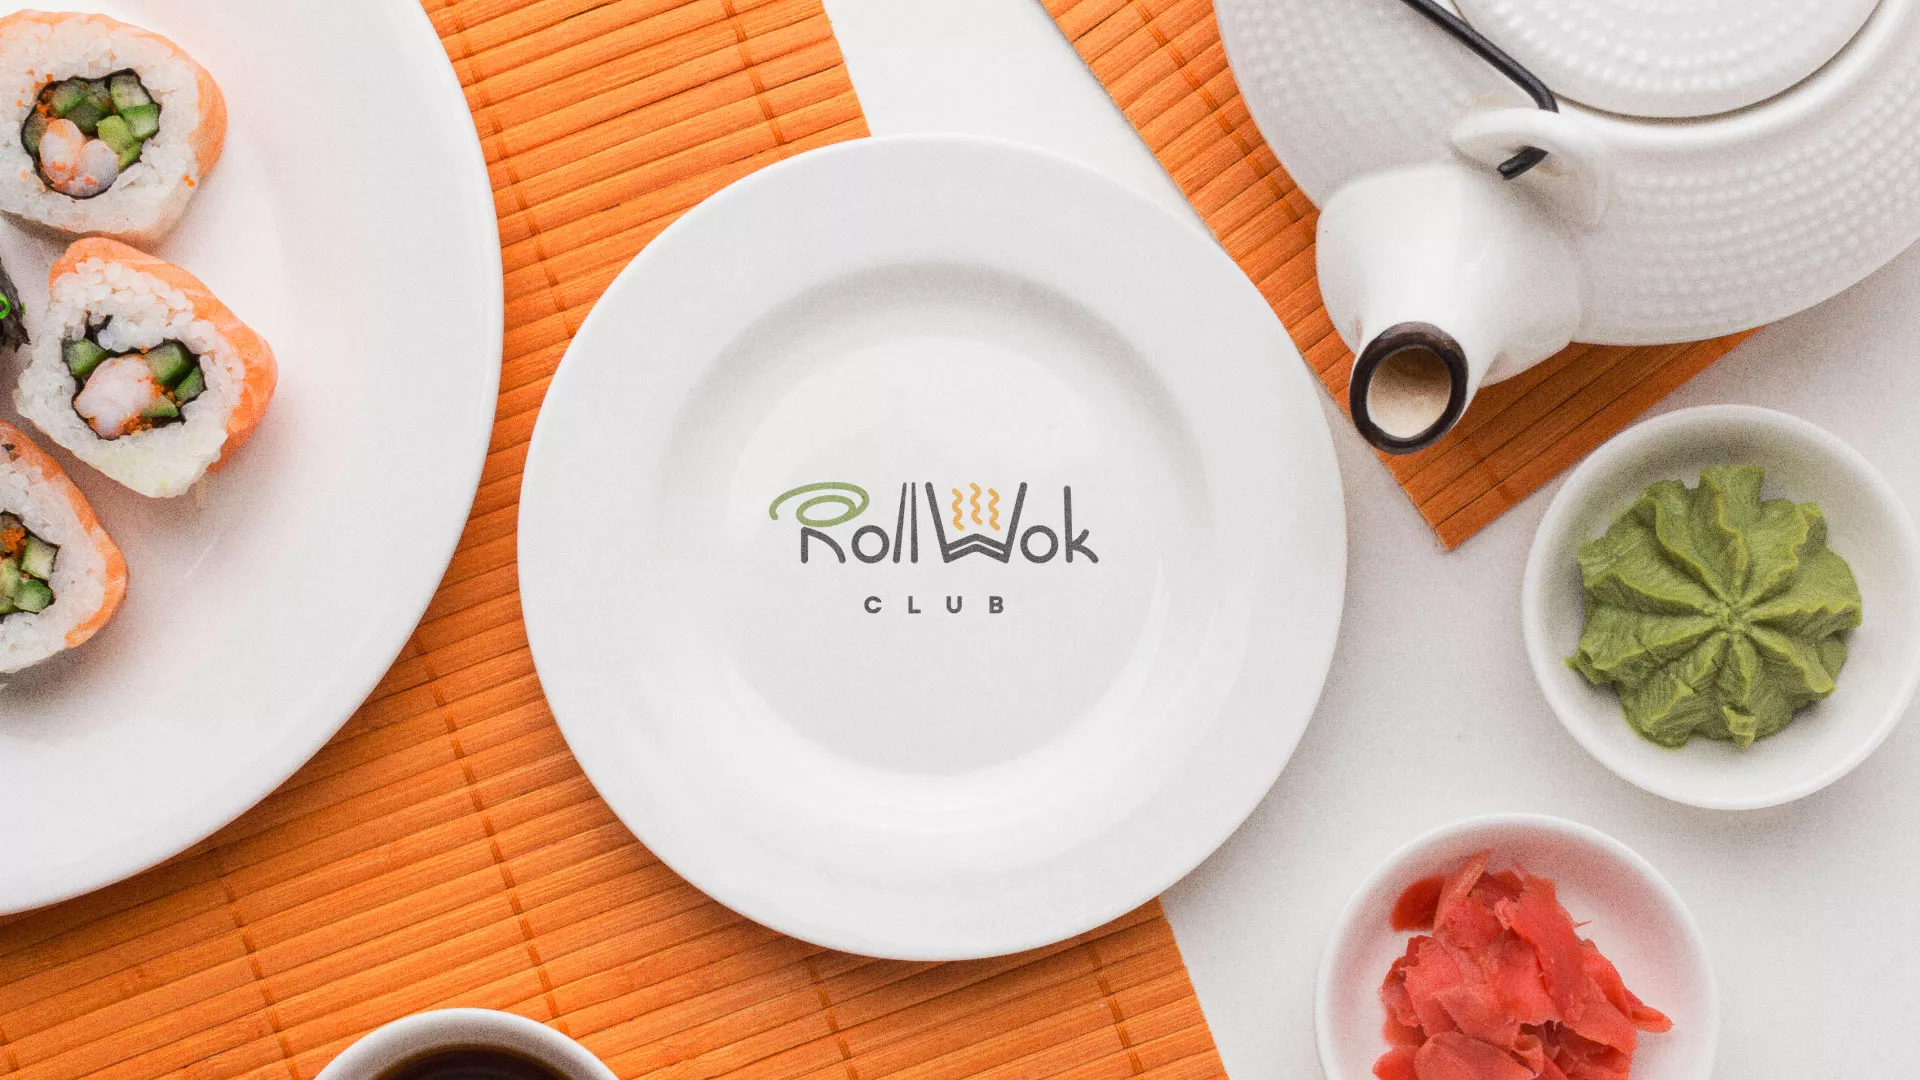 Разработка логотипа и фирменного стиля суши-бара «Roll Wok Club» в Магадане